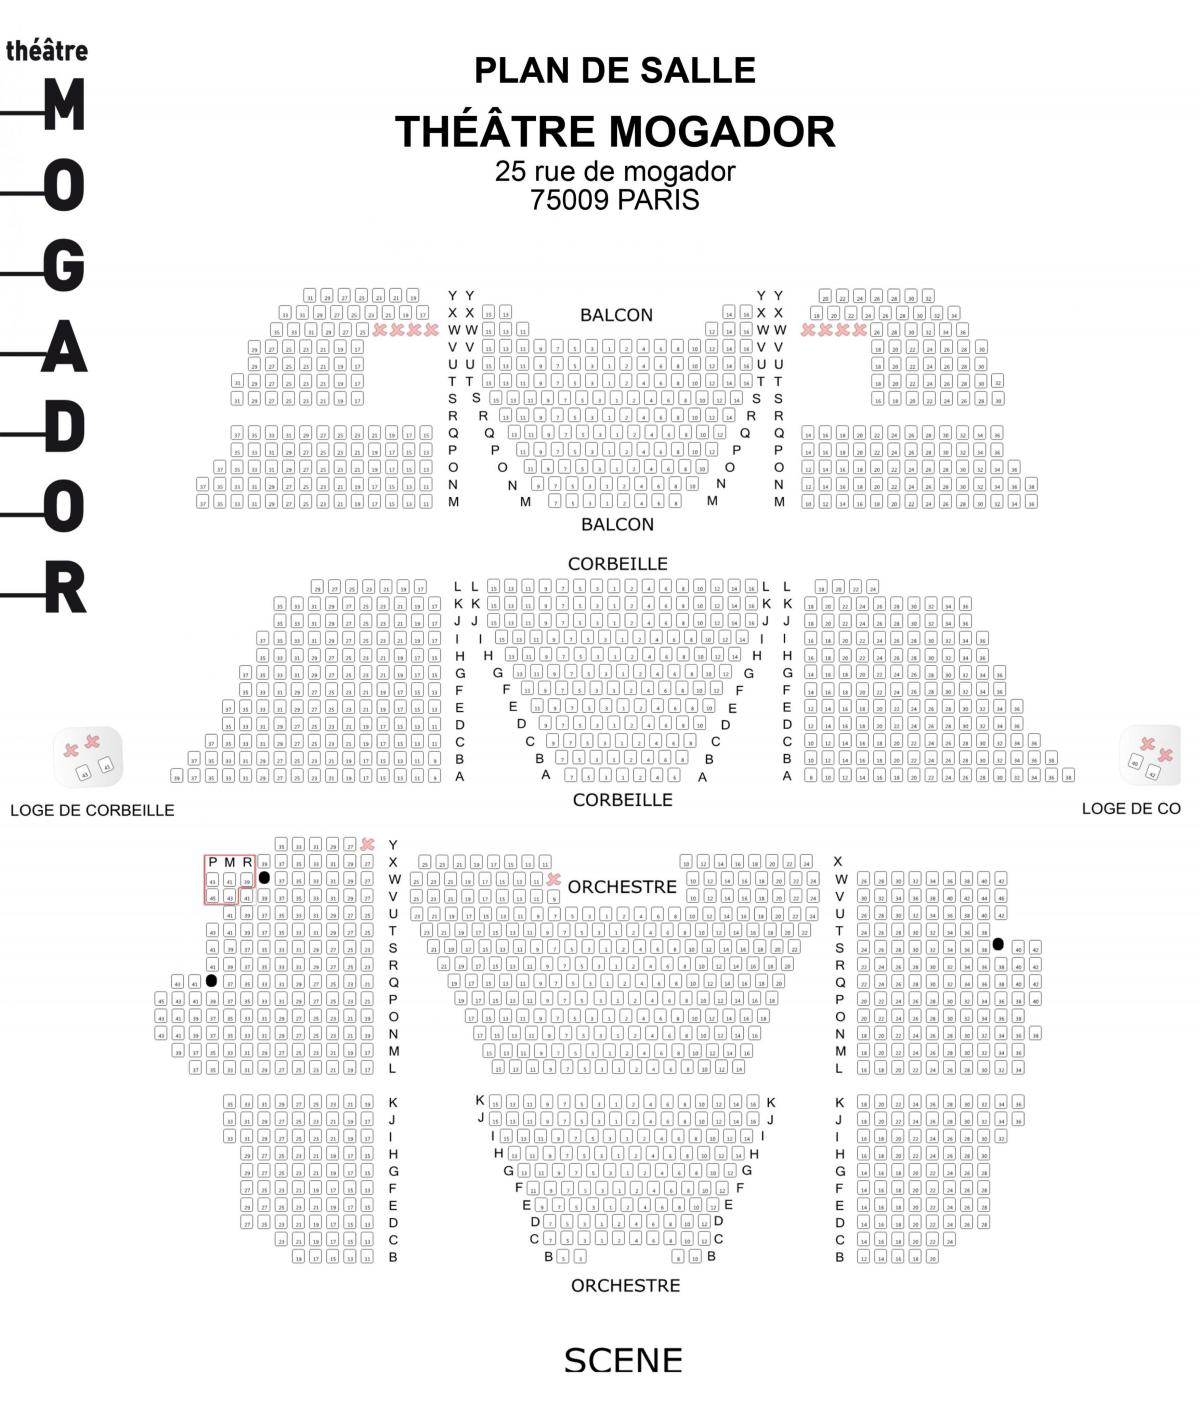 வரைபடம் Théâtre மெகடோர்